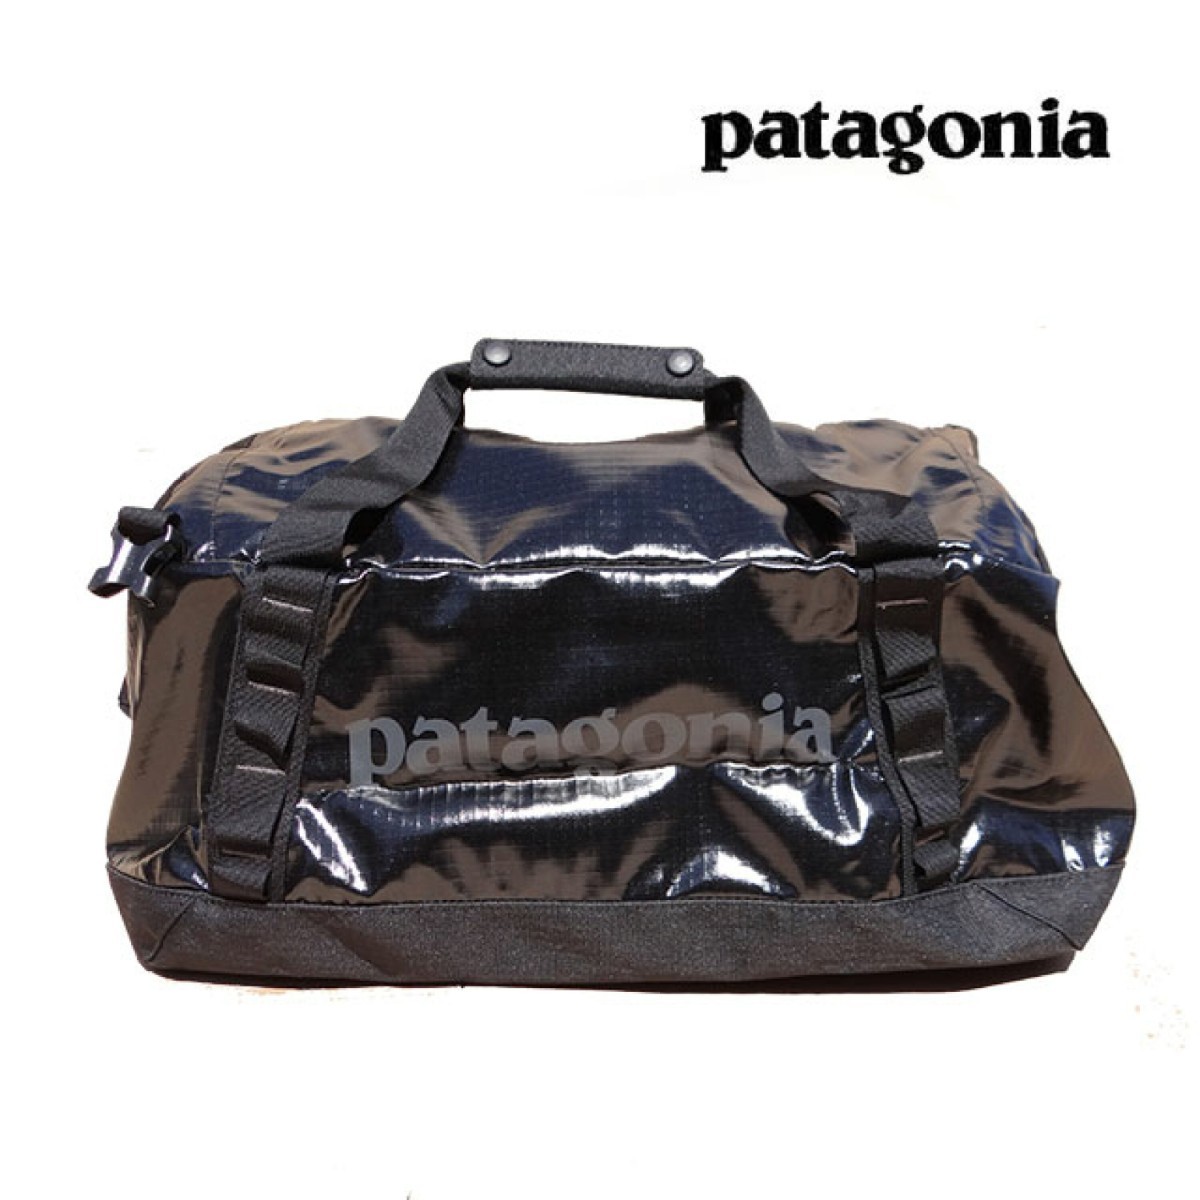 patagoniaパタゴニア ダッフルバッグ 40L BLACK ボストンバッグ バッグパック リュック 